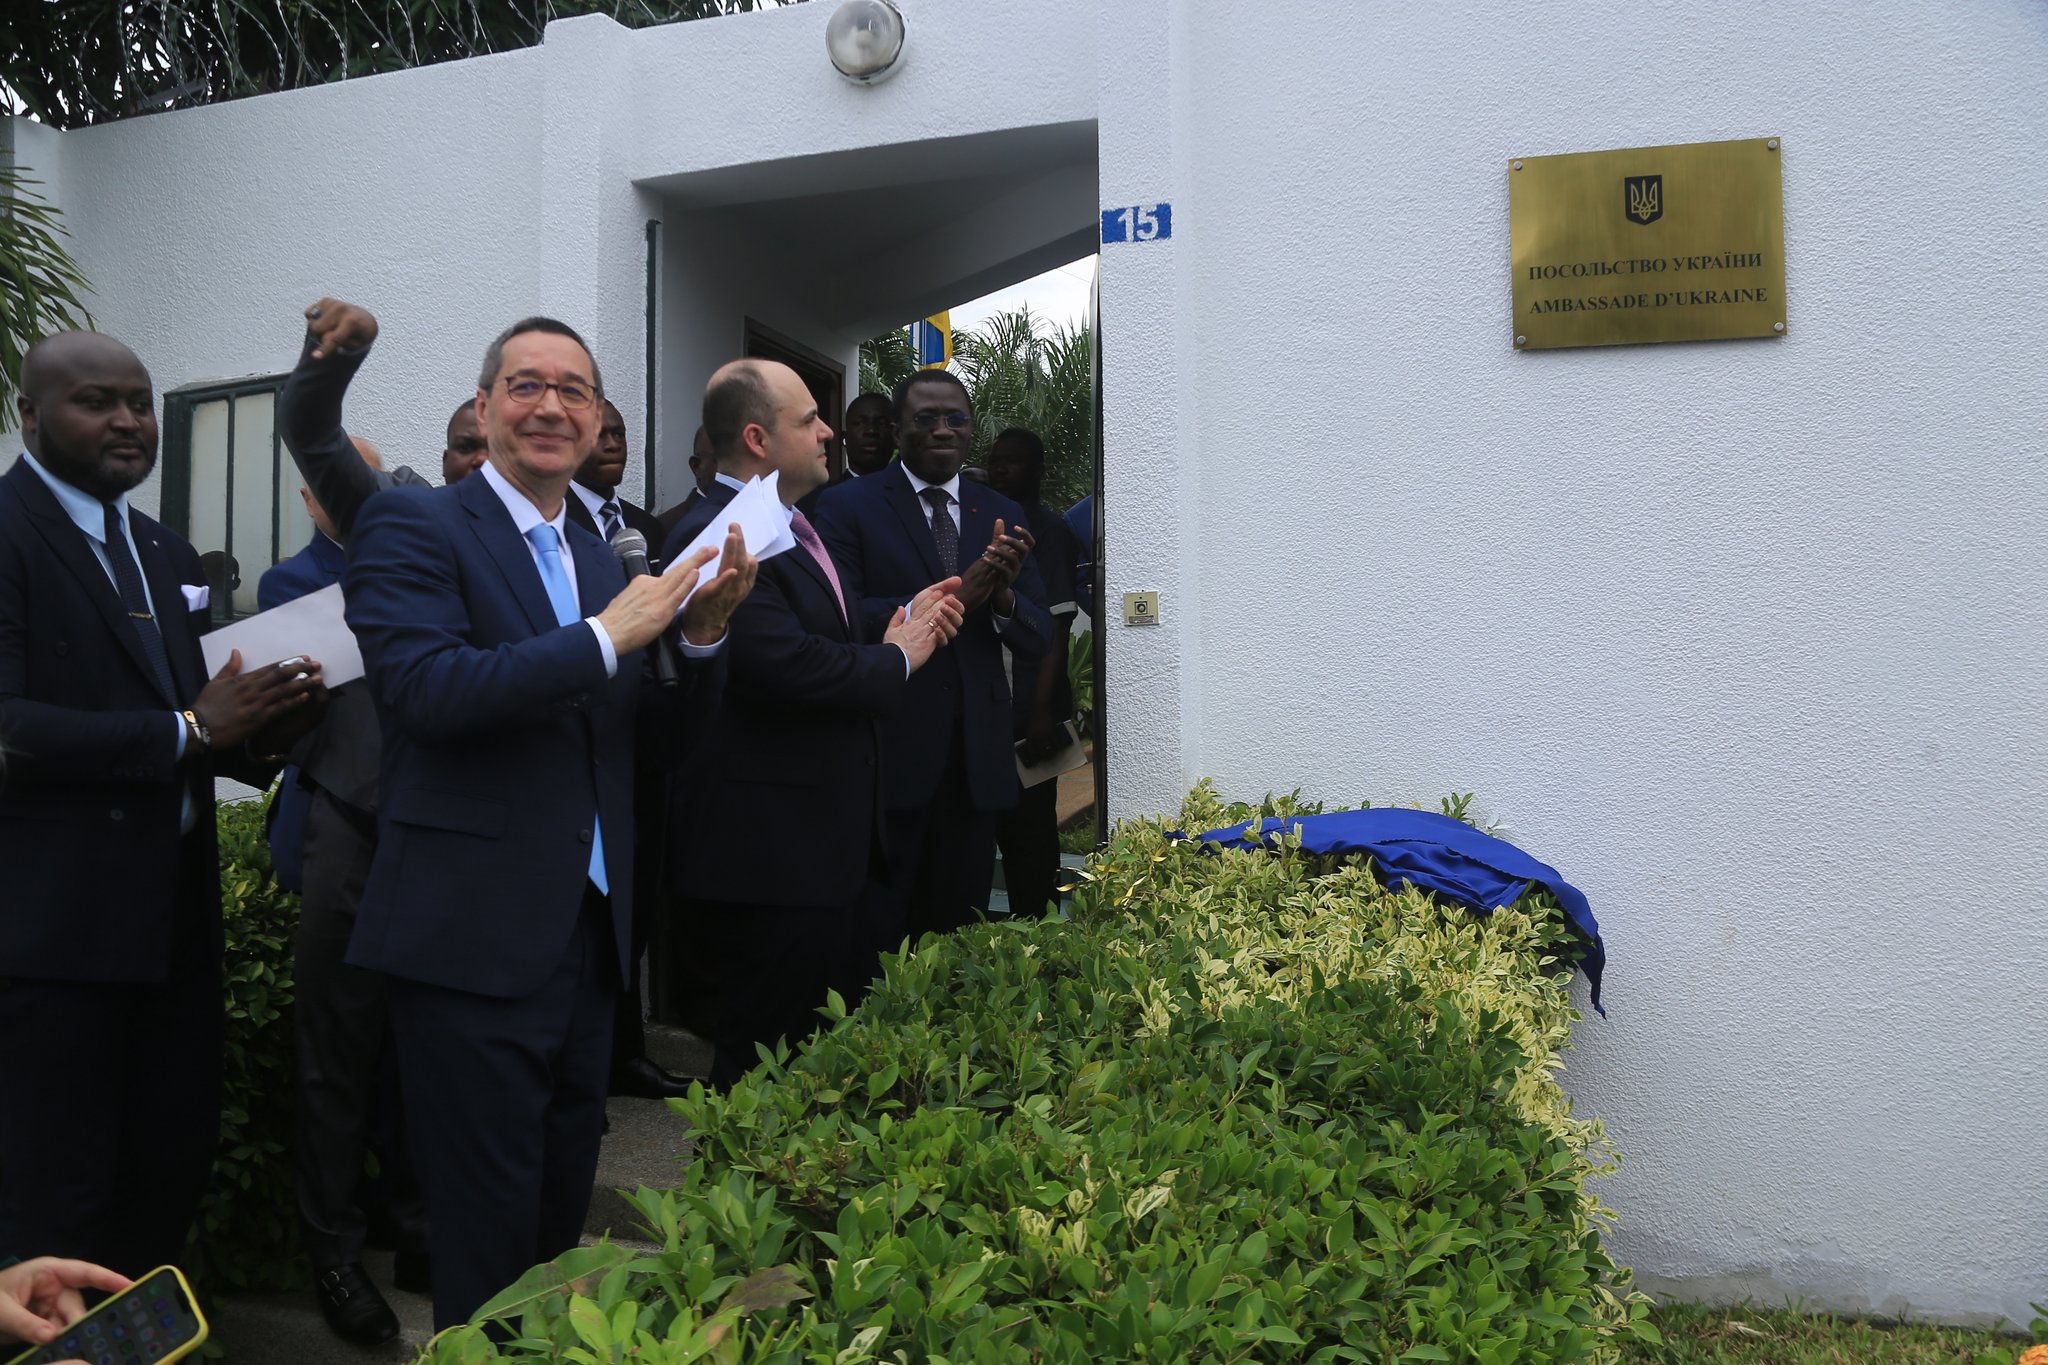 Ukraine opens embassy in Ivory Coast